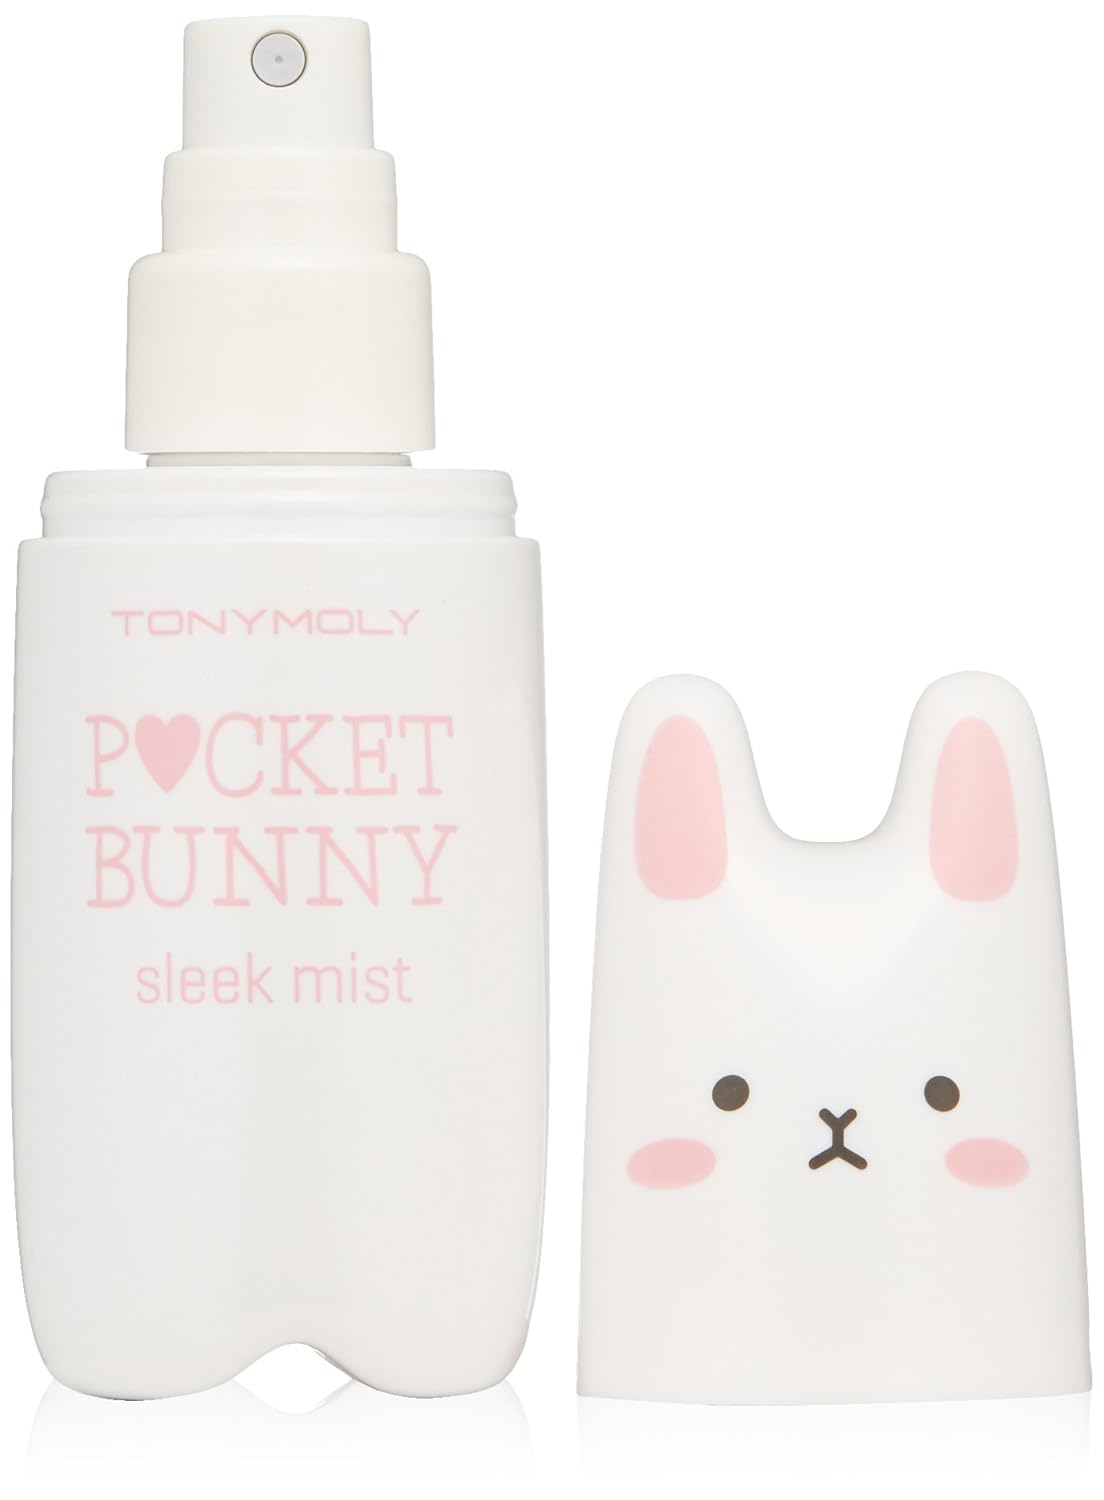 TONYMOLY Pocket Bunny Sleek Mist Moisturizer, 2.03